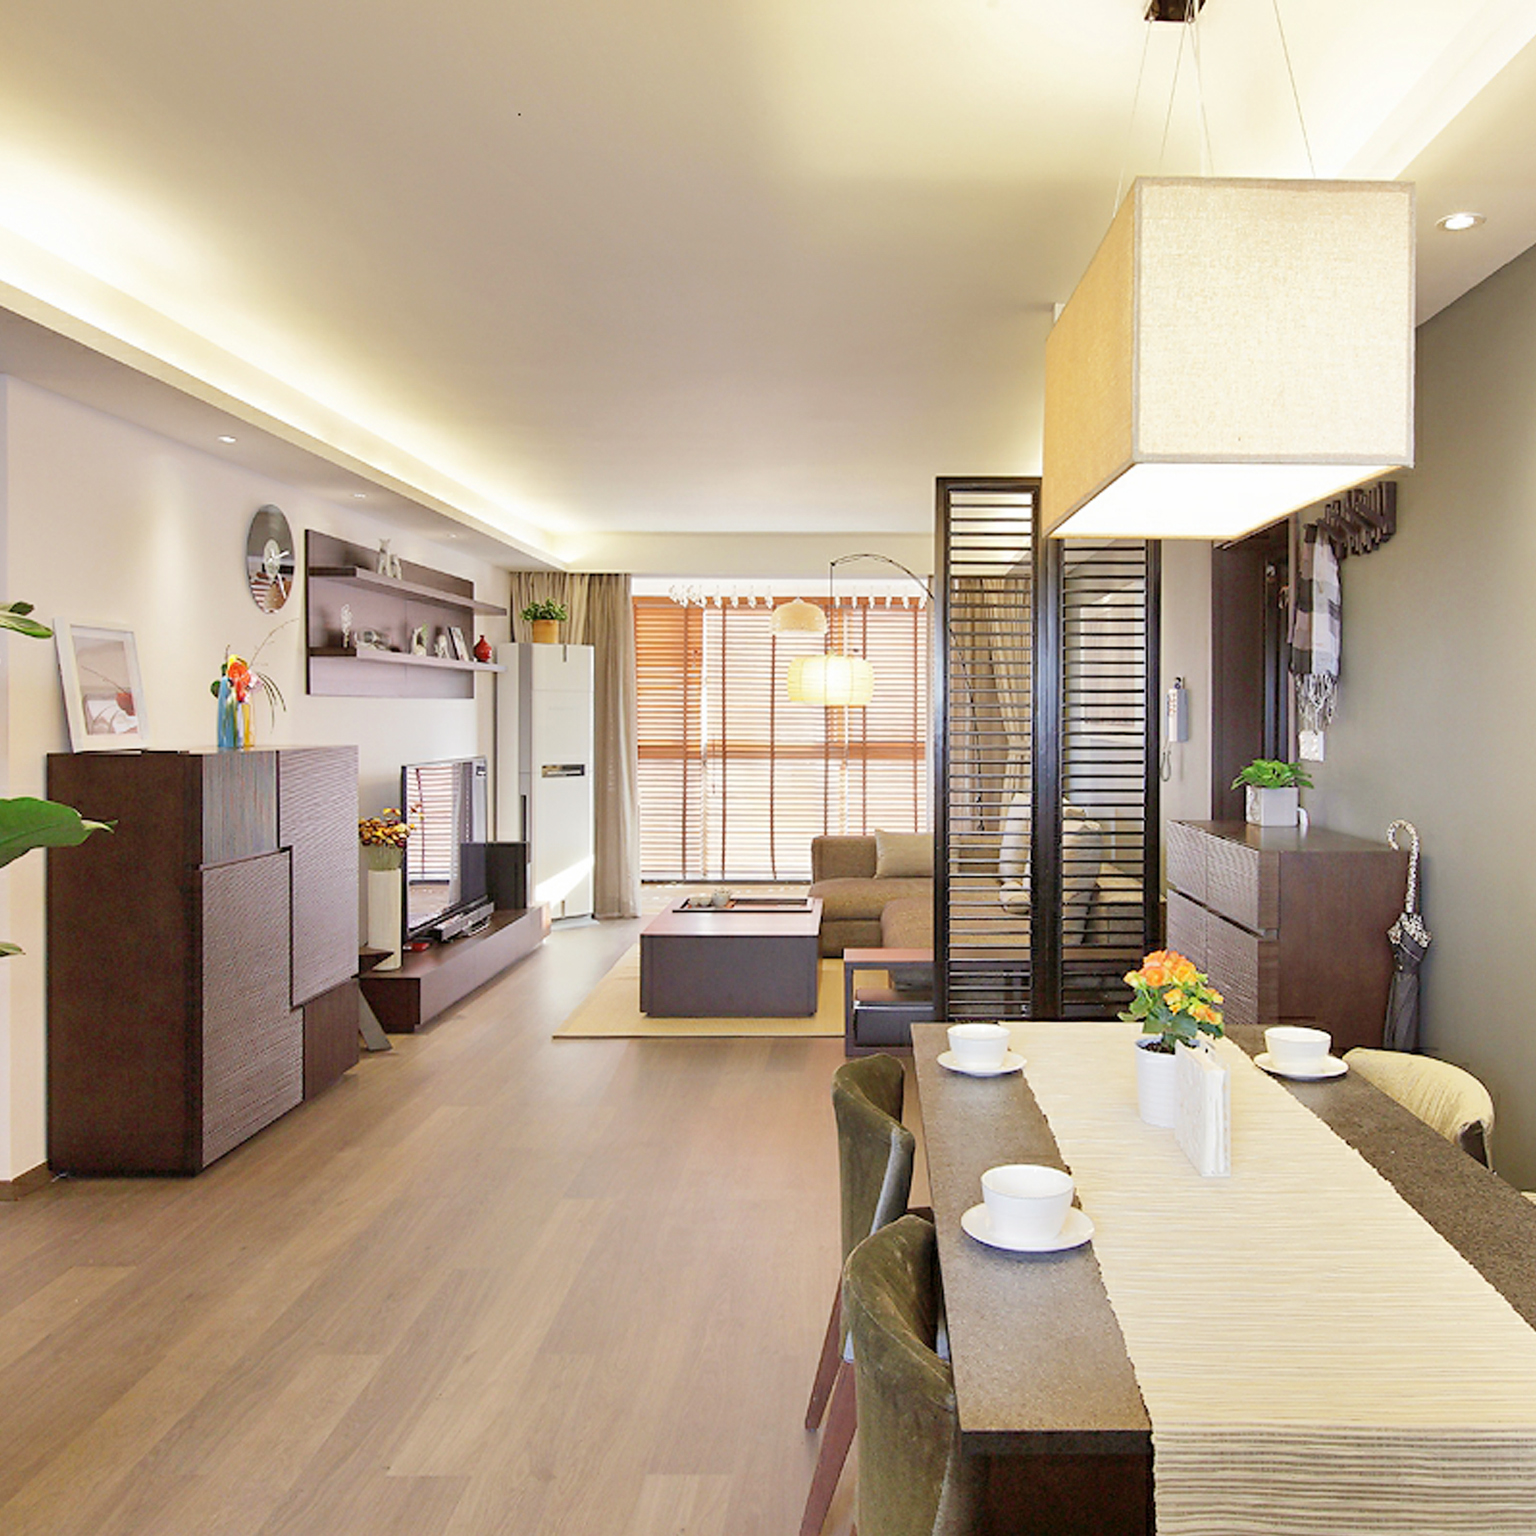 整体的空间设计和家具材质搭配和谐，给人一种温润大方的感受。